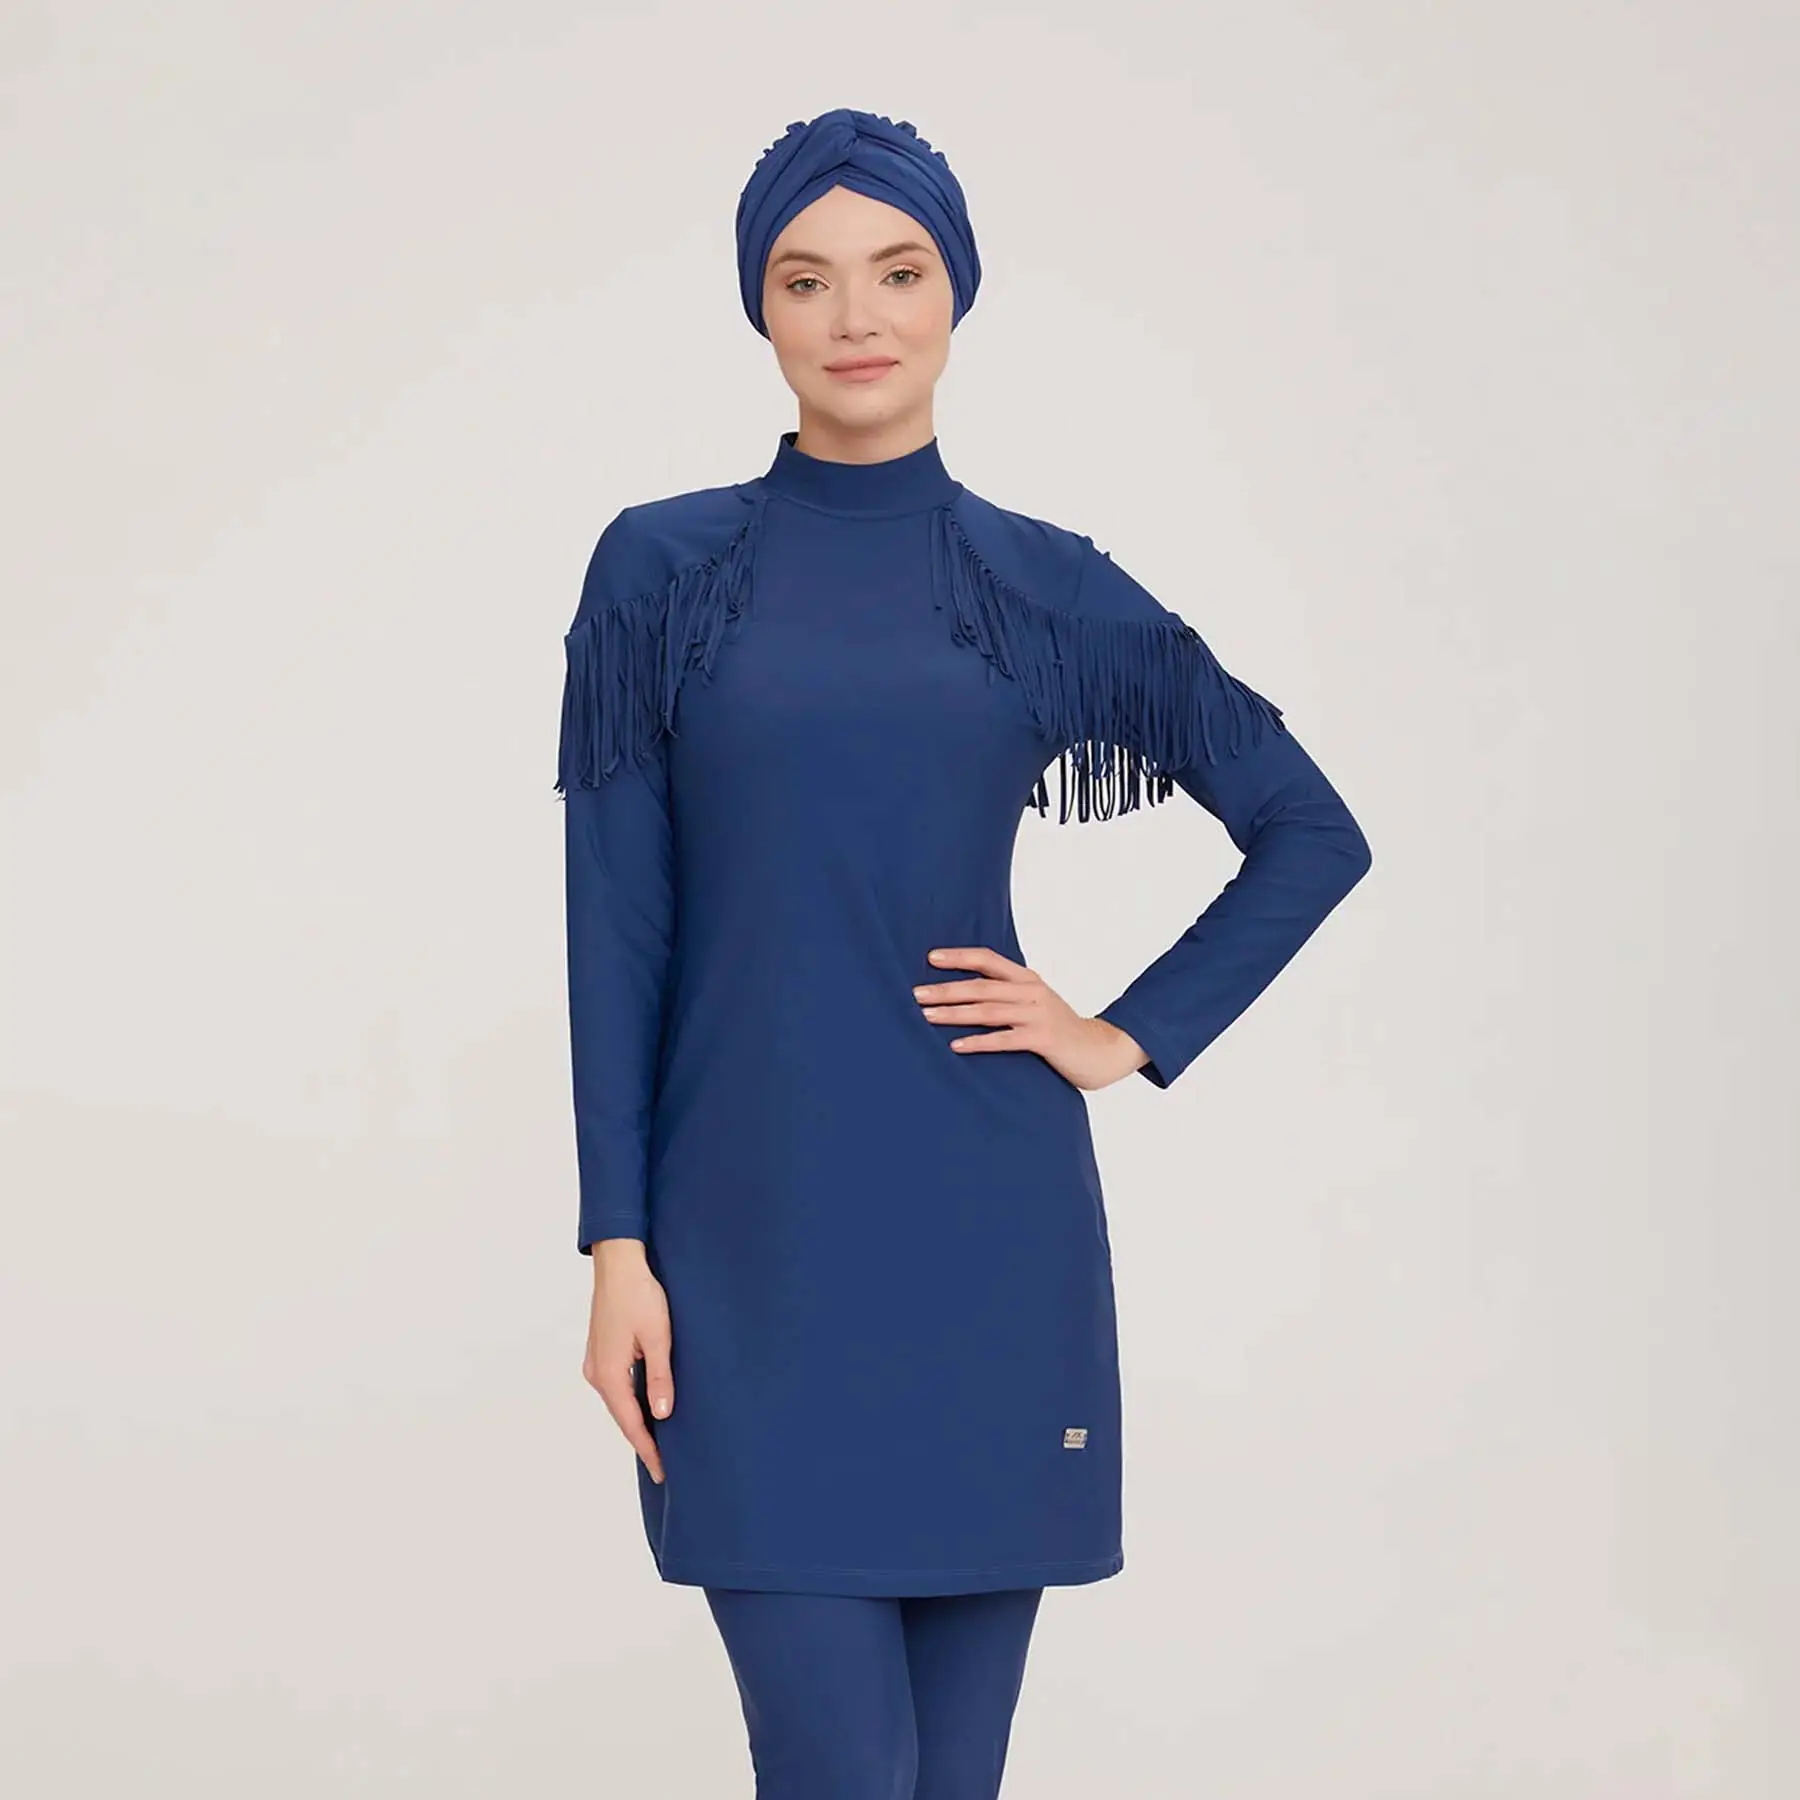 Aschulman 2023 sıcak satmak özel kız uzun kollu rahat düz lacivert Burkini islami mayo kadınlar